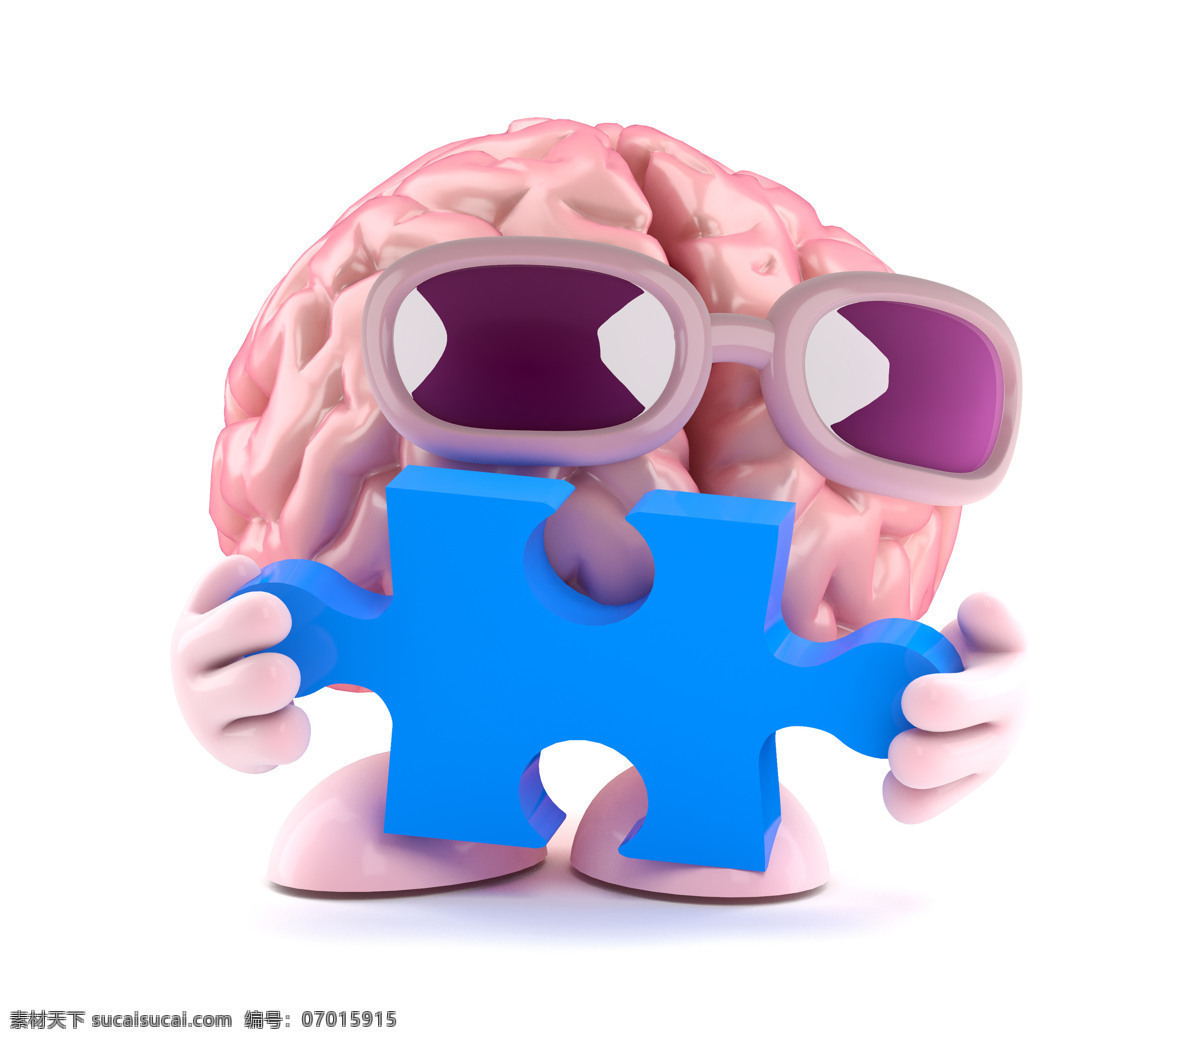 大脑 漫画 拼图 人类大脑 大脑漫画 大脑设计 卡通大脑 大脑人物 虚拟人物 儿童卡通 卡通动画 脑细胞 脑容量 太阳镜 动漫动画